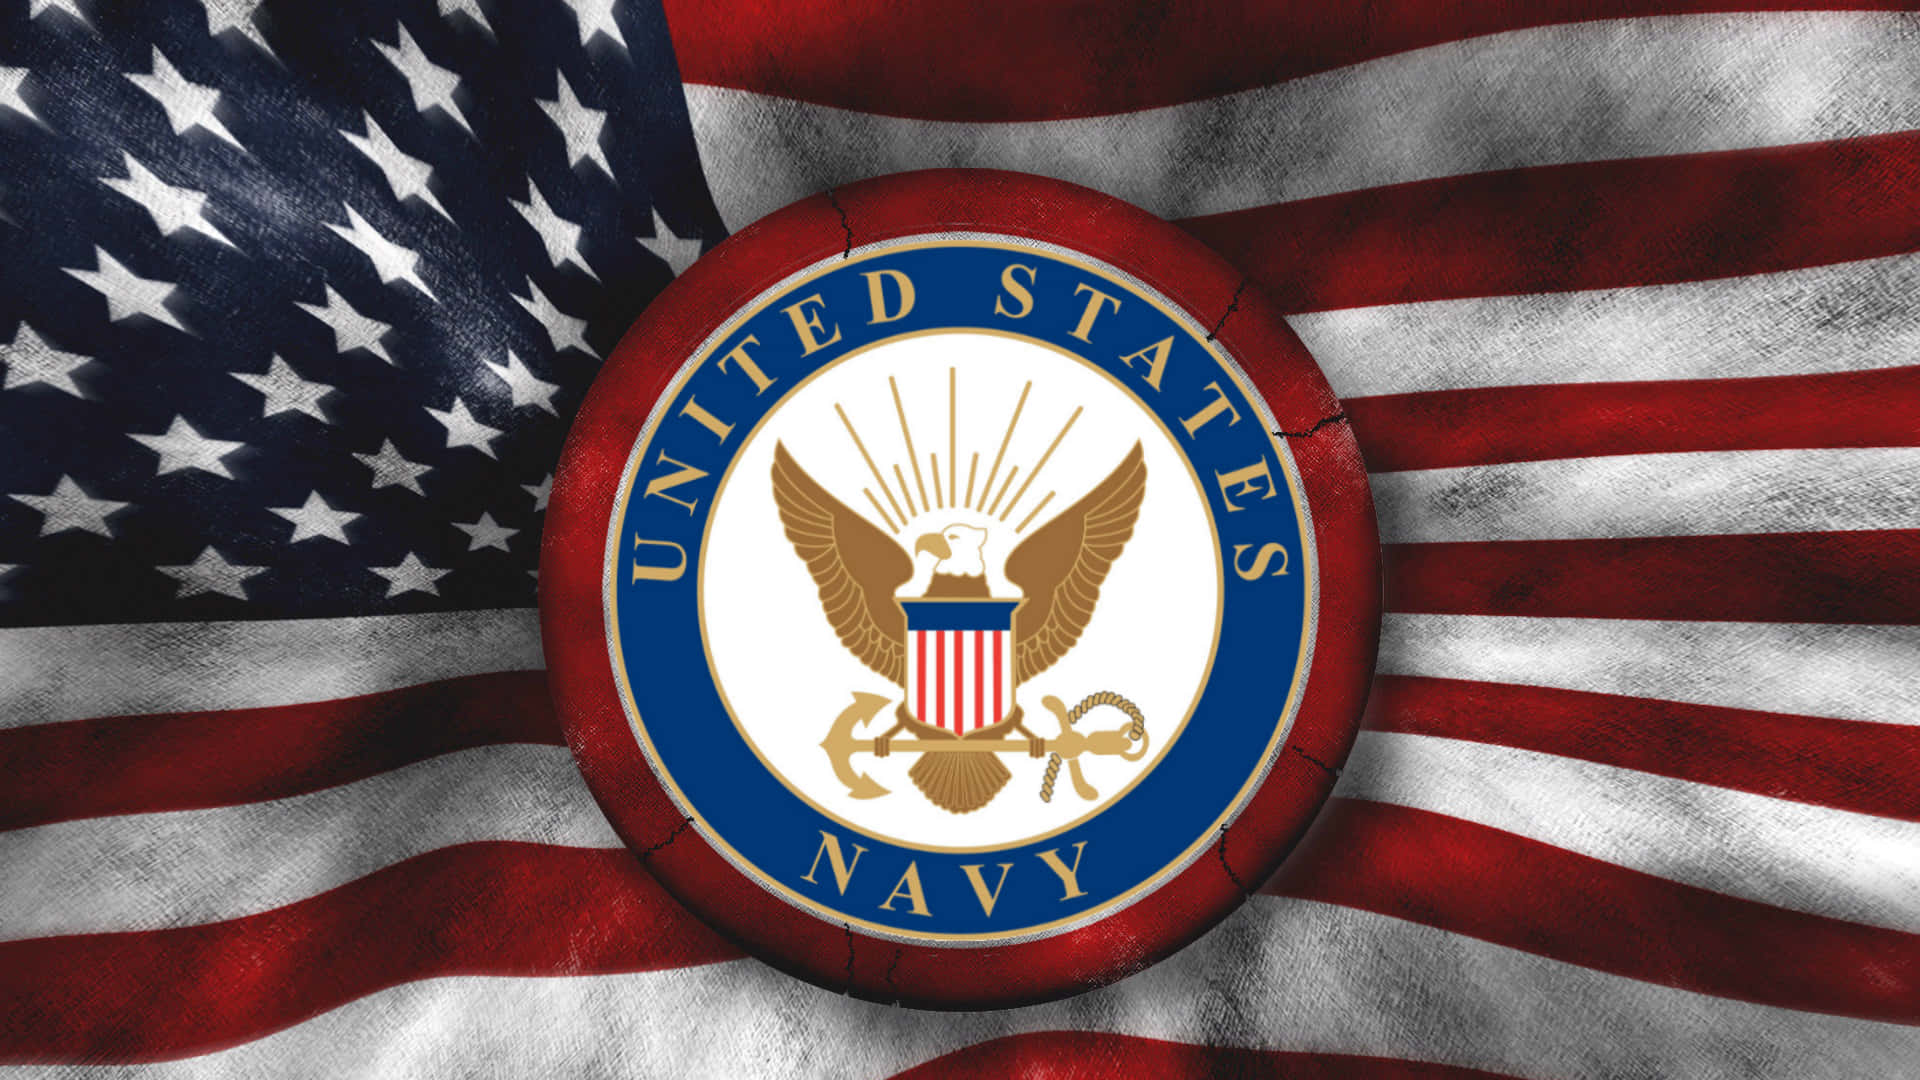 Kæmperfor Vores Frihed - Us Navy